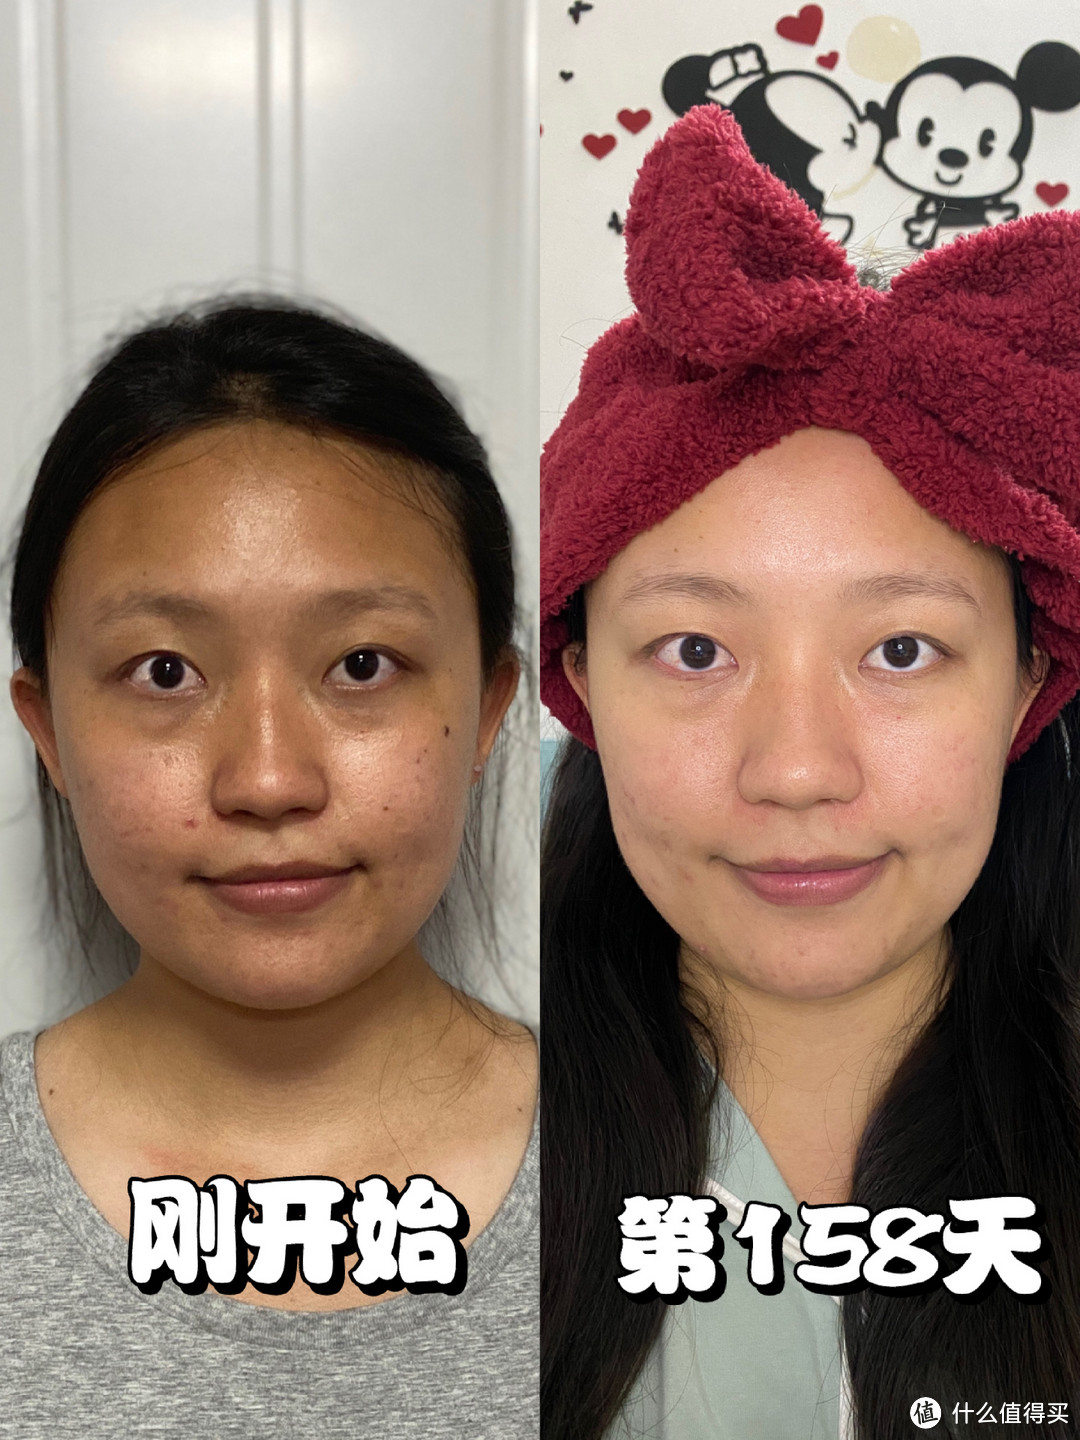 “长期化妆”和“长期素颜”的女生，哪一个皮肤更好？答案很明显